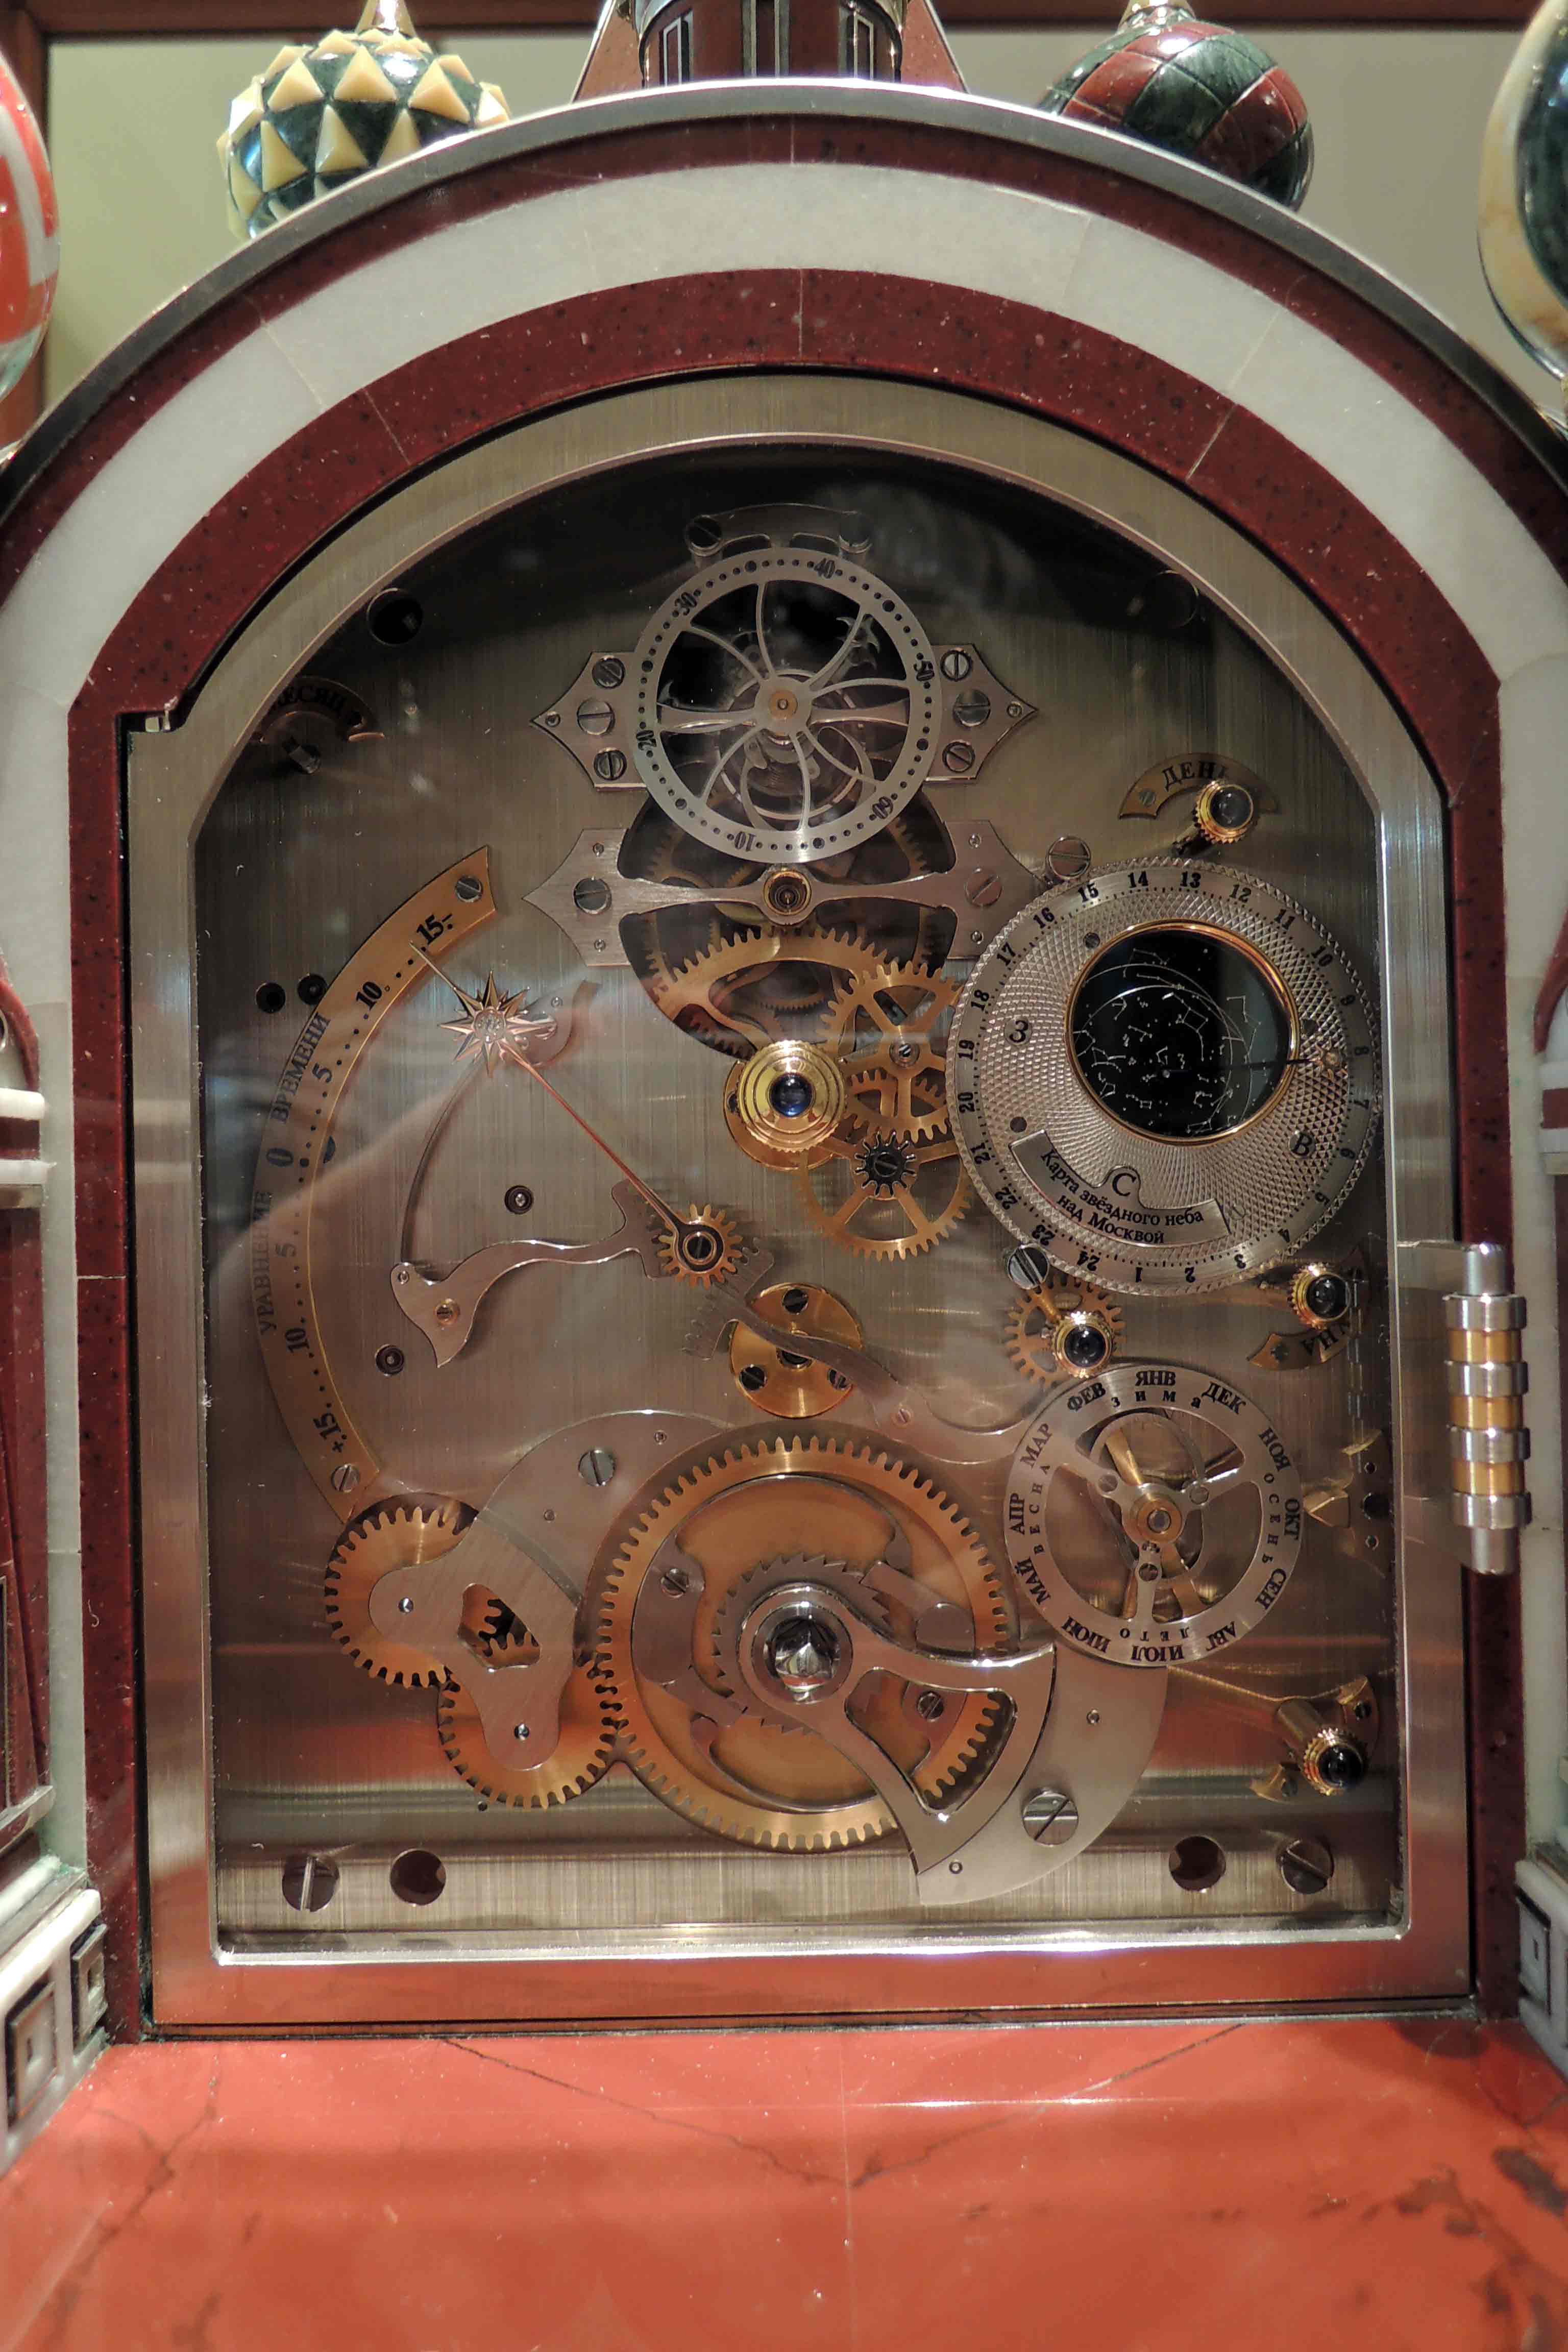 На заднем циферблате сердце часов - односекундный турбийон, указатели звездного времени, уравнения времени и ручки установки других функций.